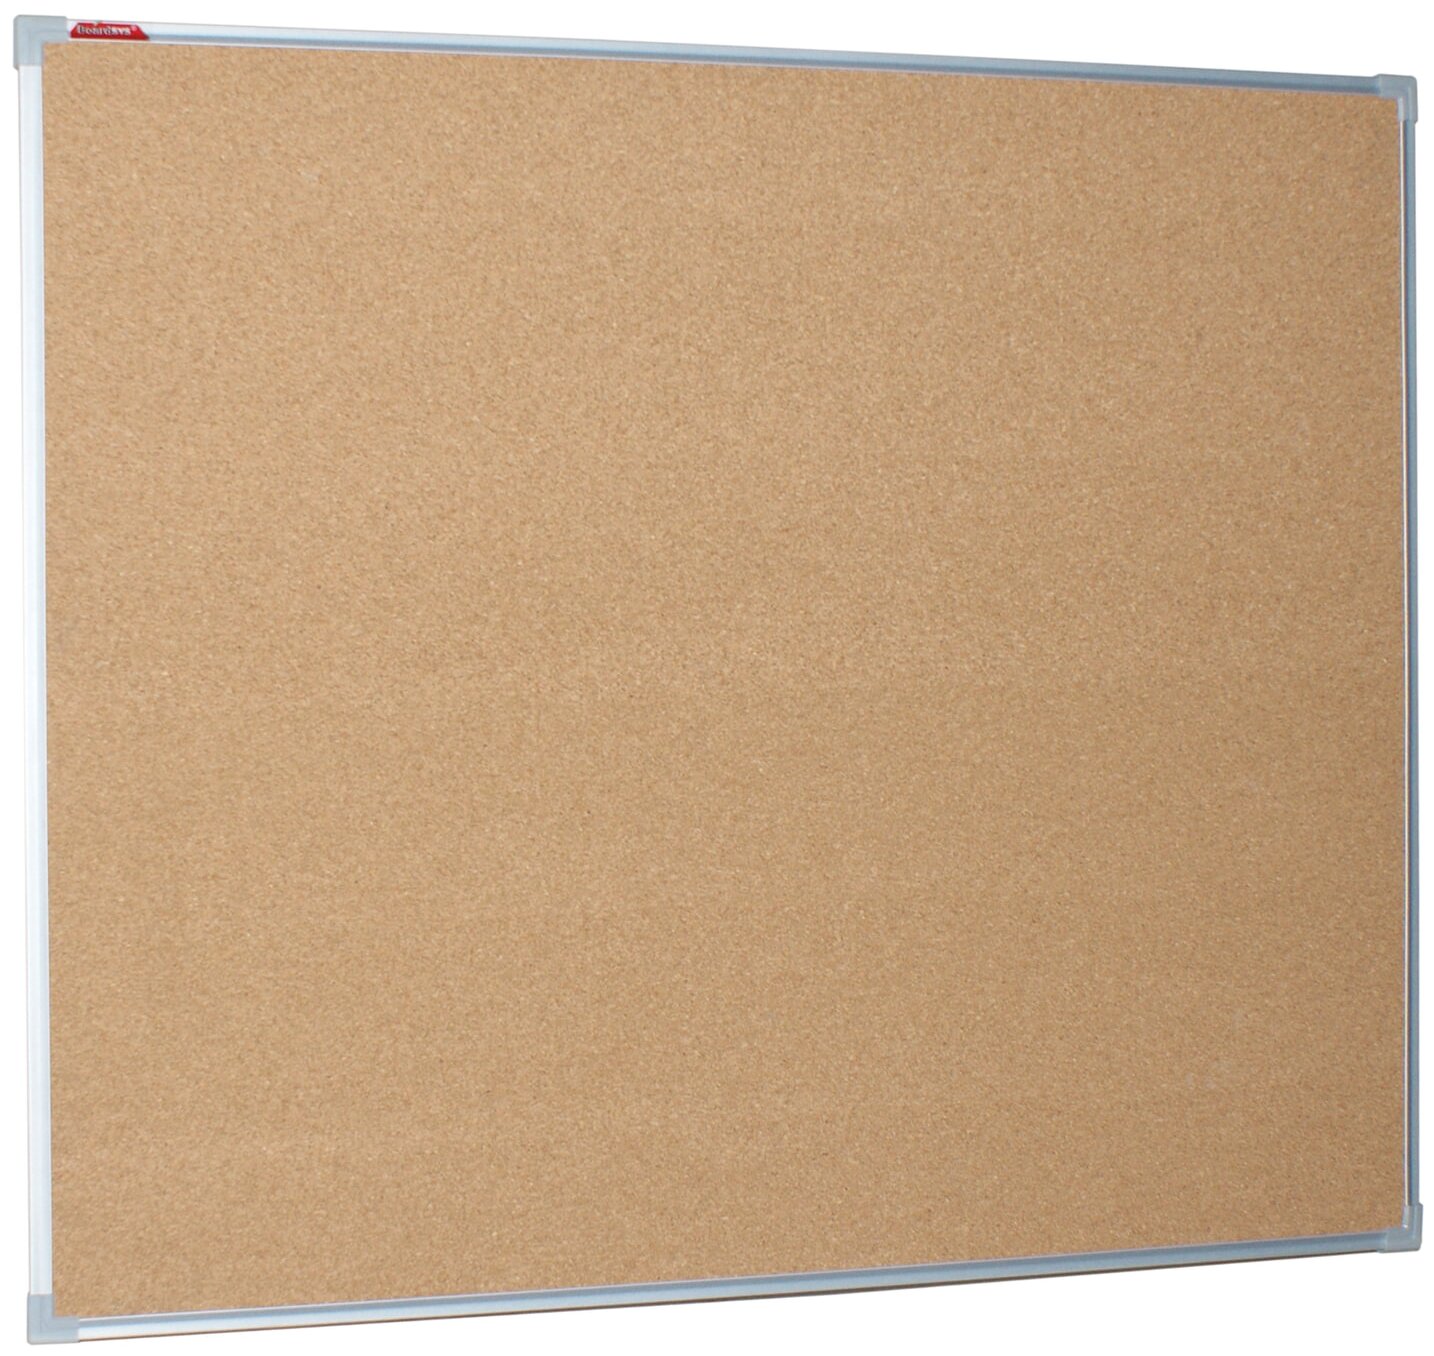 Демонстрационная доска BoardSYS пробковая, 100х120см, пробка (коричневый)/алюминий (серый) (П*120)